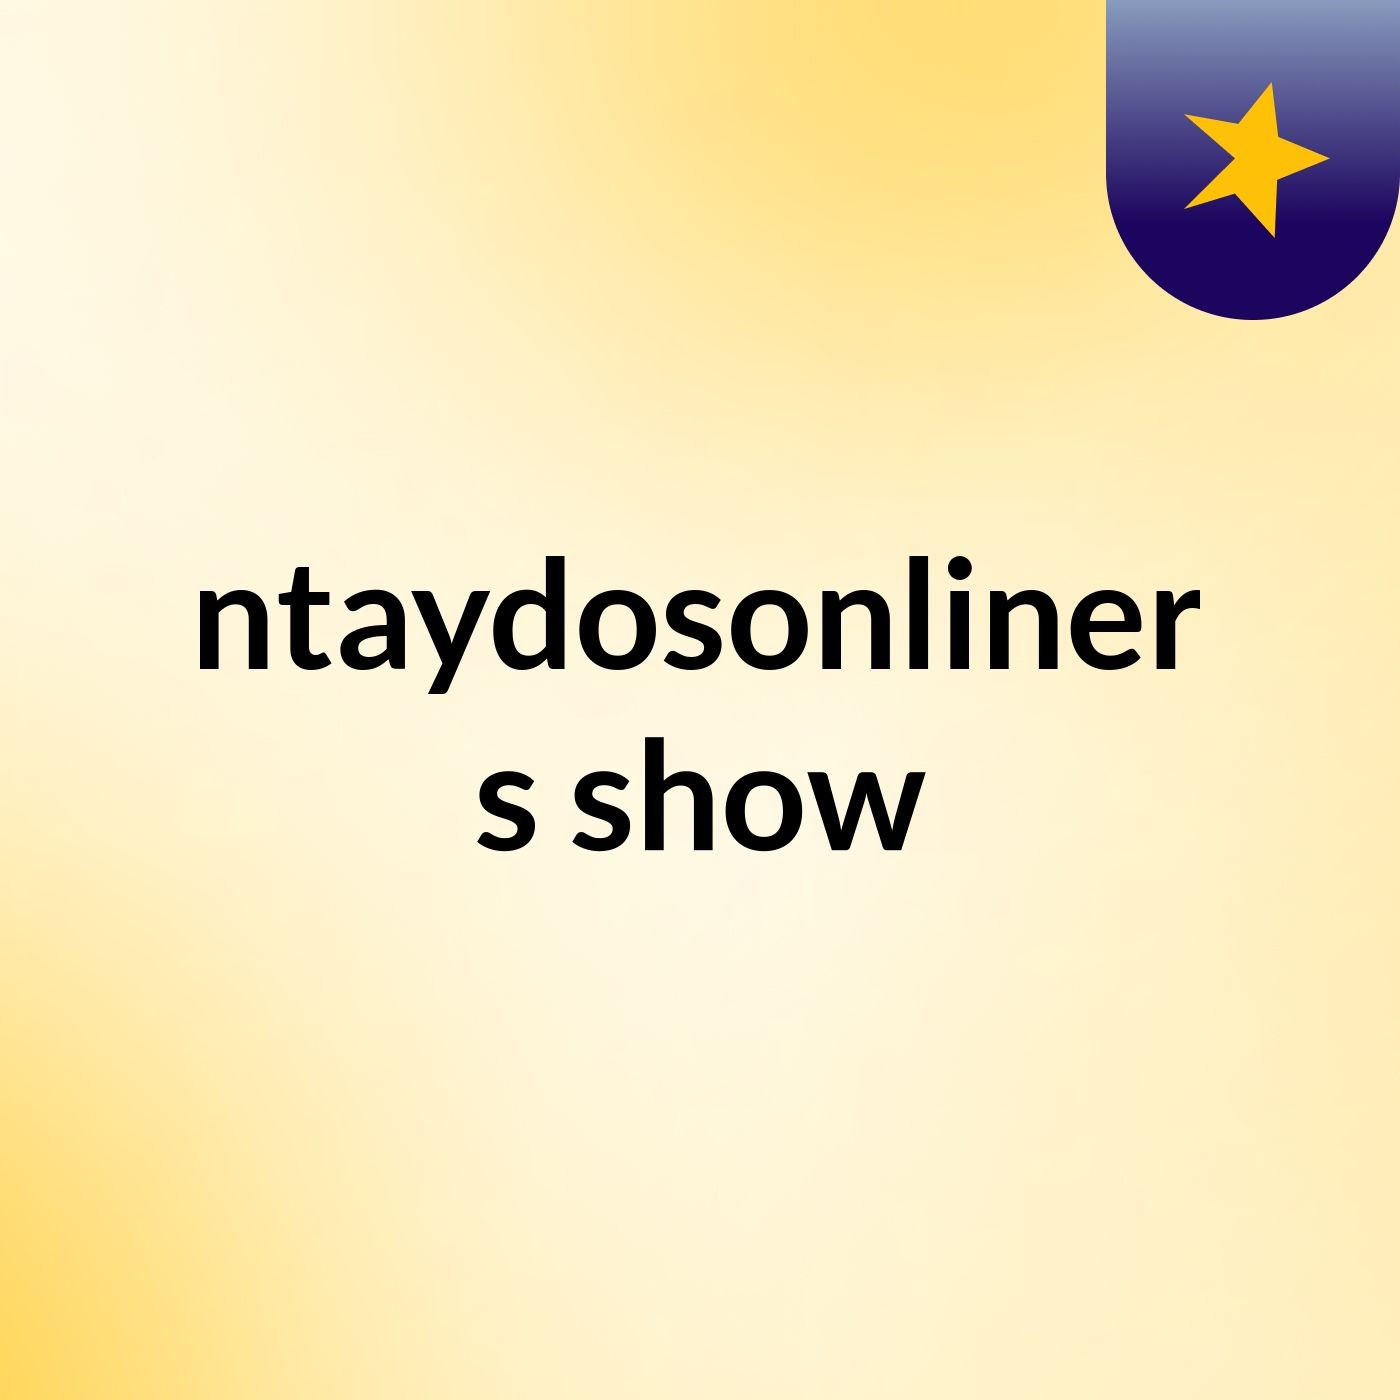 noventaydosonlineremix's show